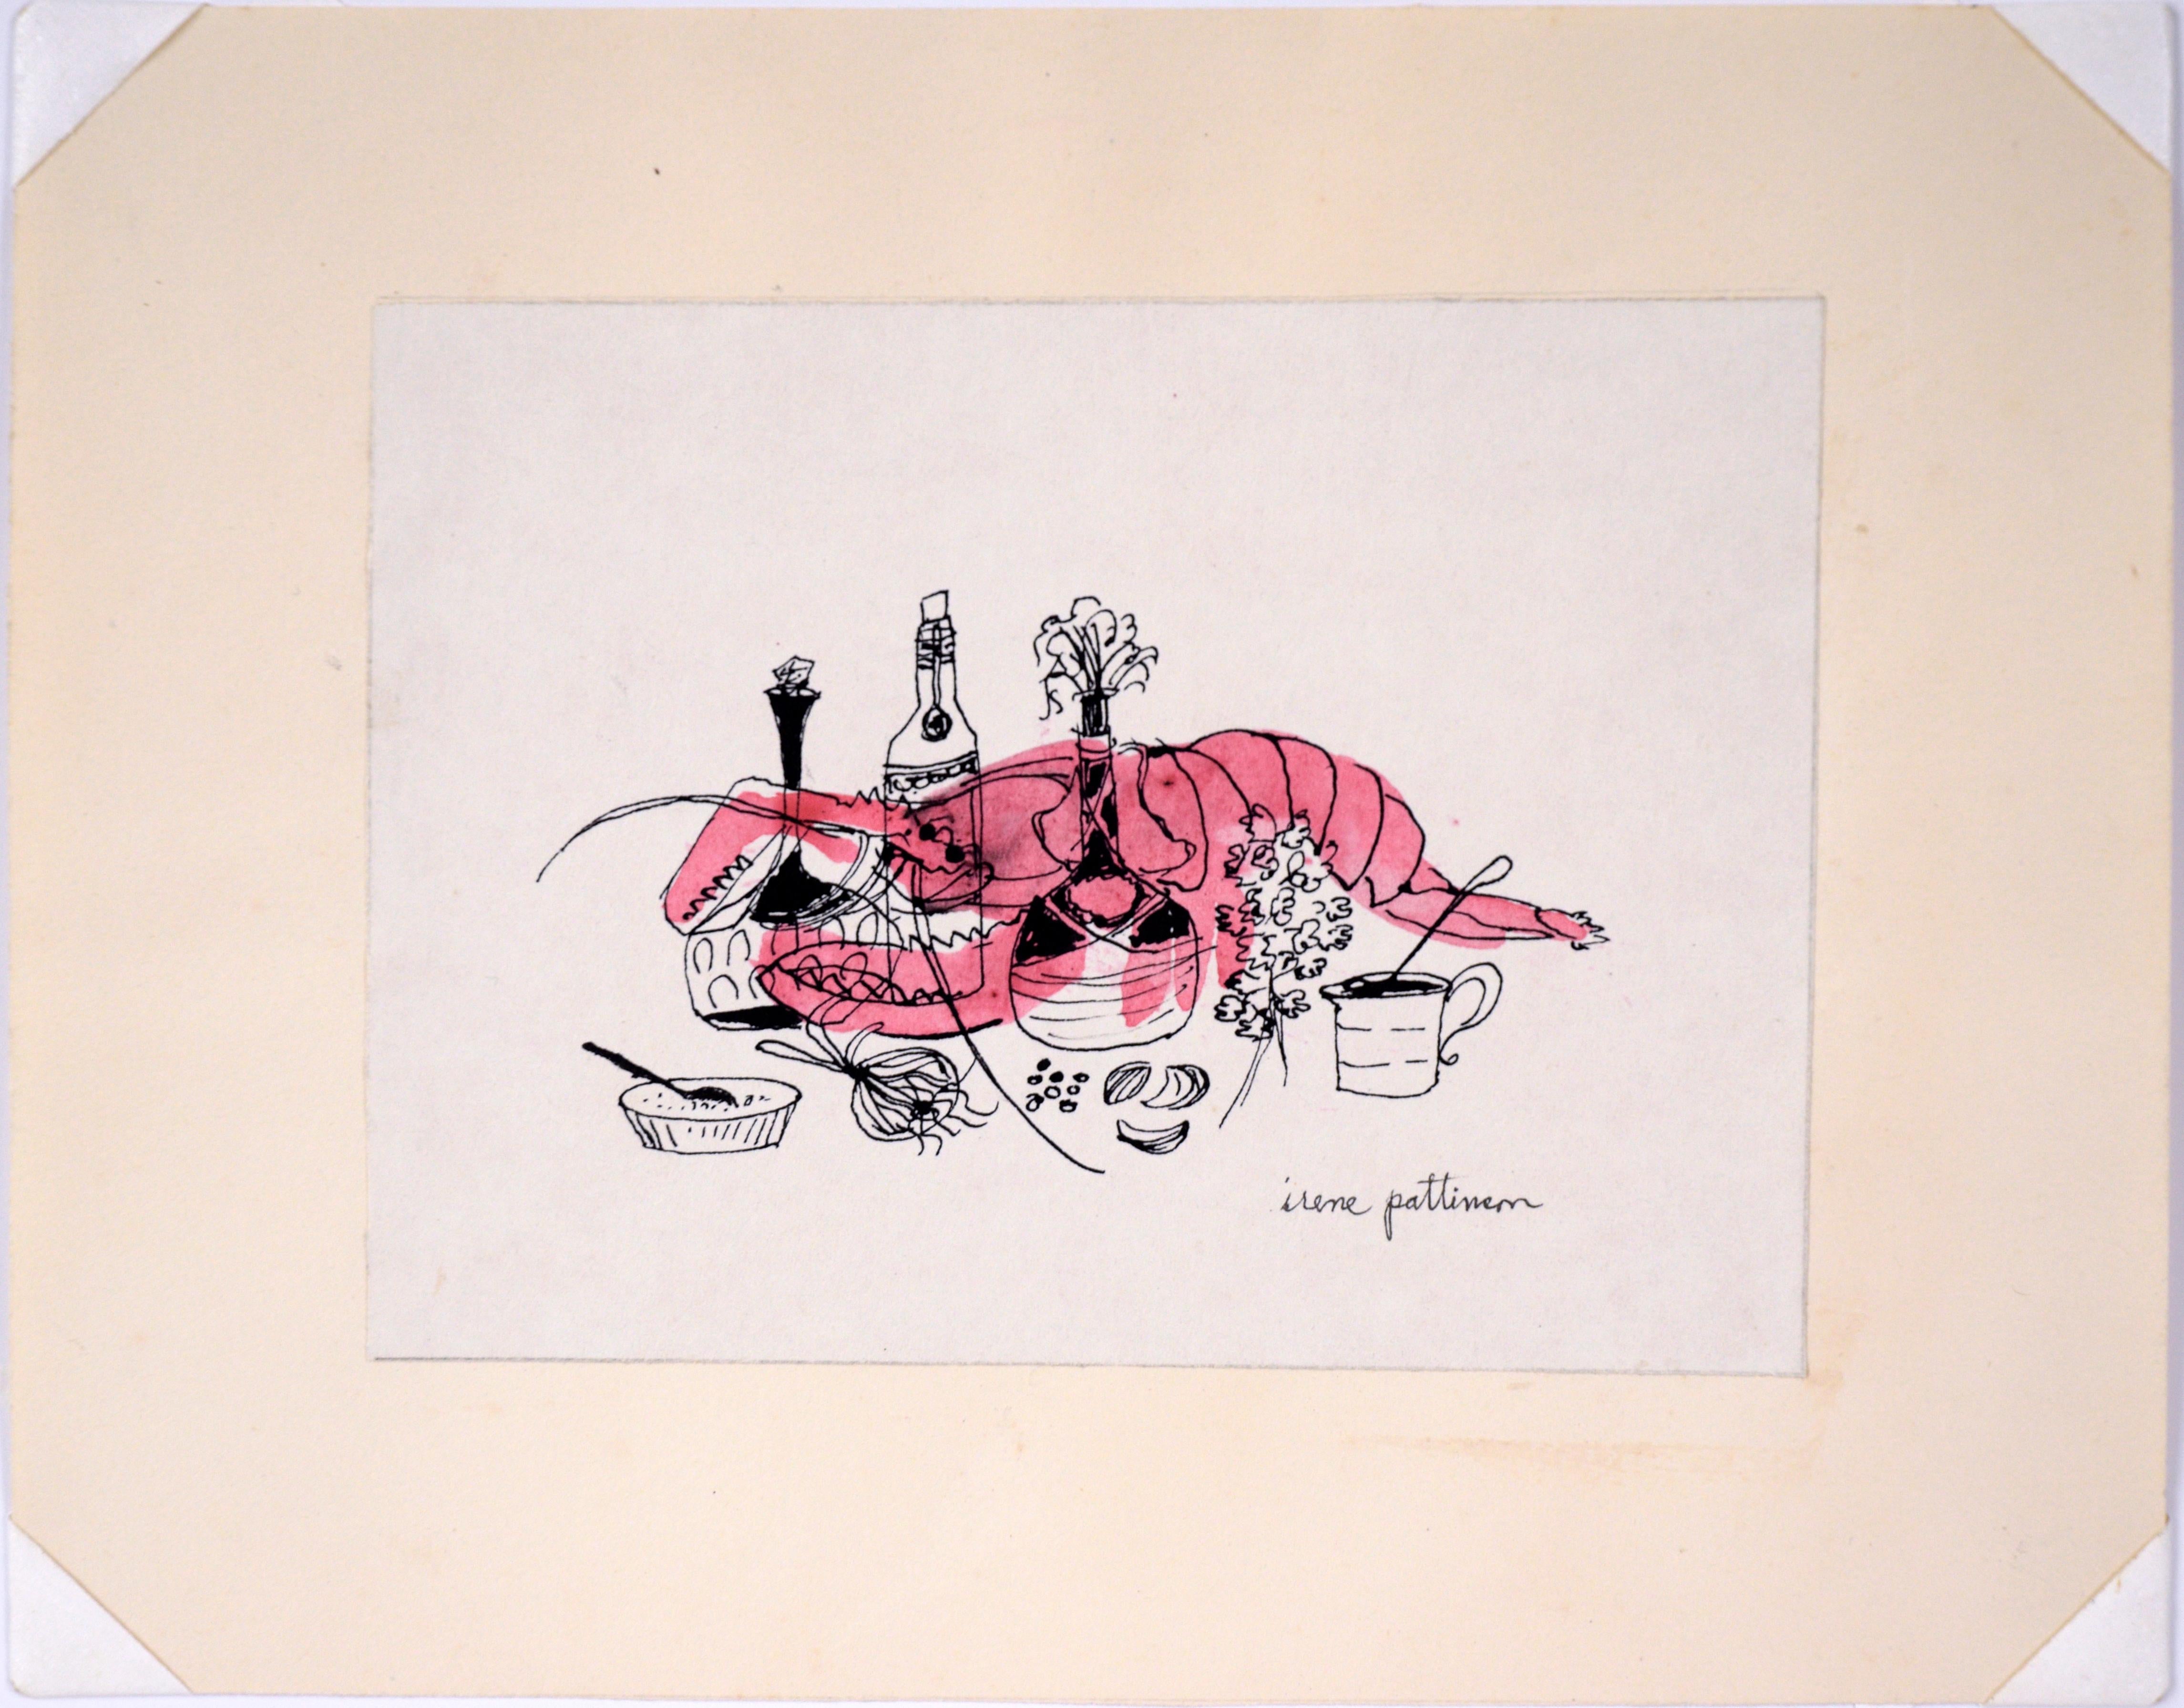 Chef Lobster - Illustration vintage à l'encre et à l'aquarelle

Une charmante illustration, réalisée par Irene Pattinson (américaine, 1909-1999), montre un homard rose derrière des bouteilles ornées d'huile et d'autres ingrédients de cuisine, dont